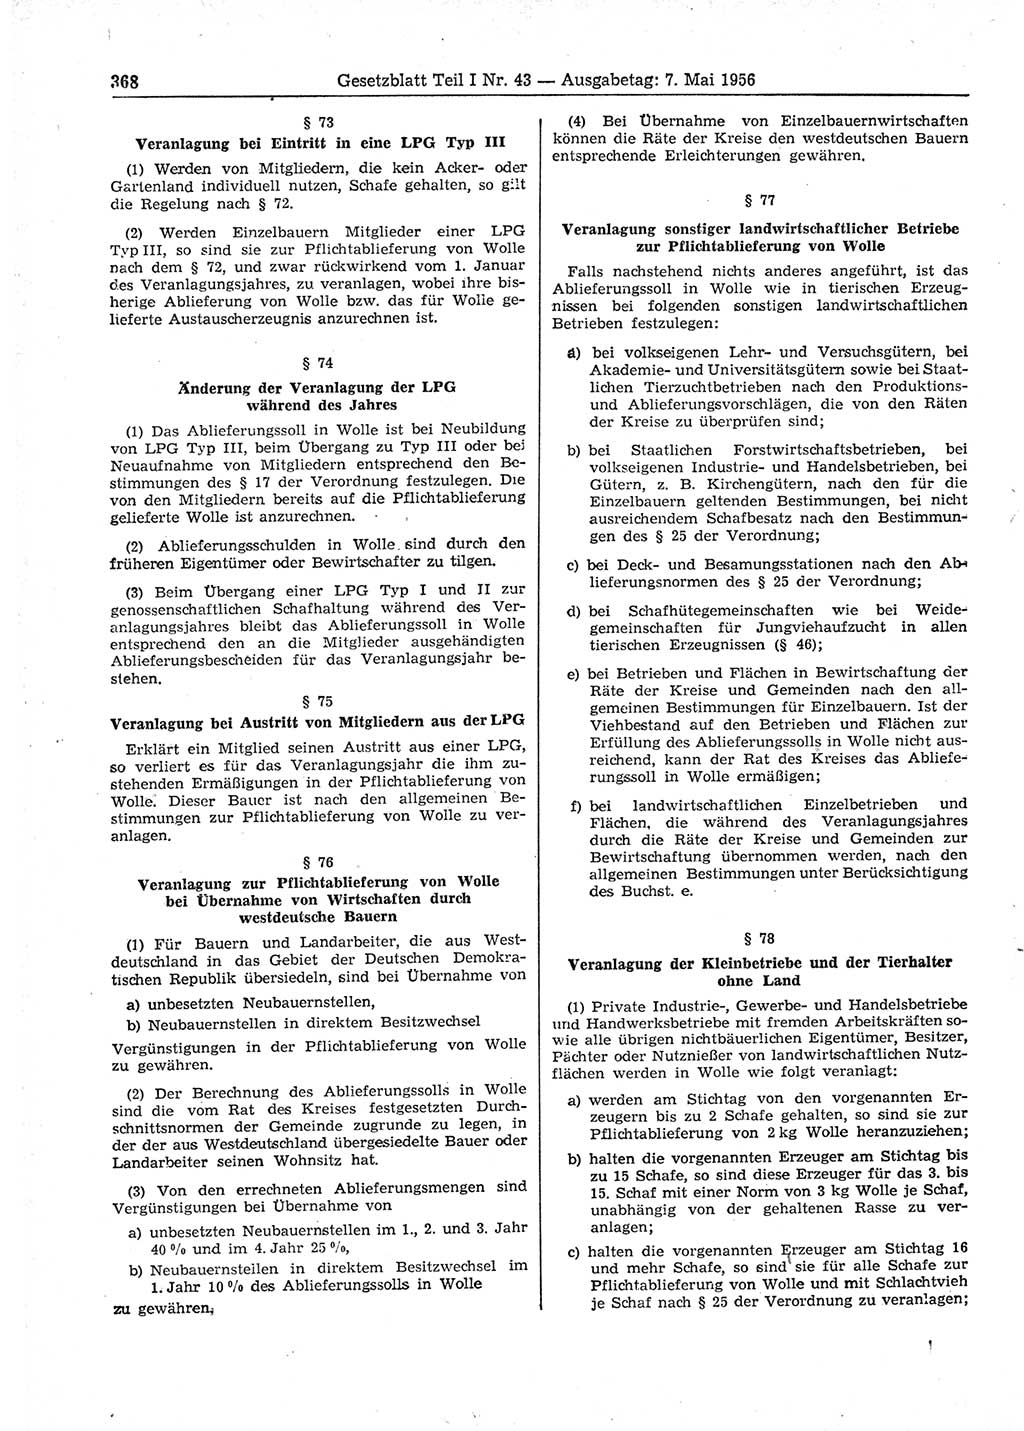 Gesetzblatt (GBl.) der Deutschen Demokratischen Republik (DDR) Teil Ⅰ 1956, Seite 368 (GBl. DDR Ⅰ 1956, S. 368)